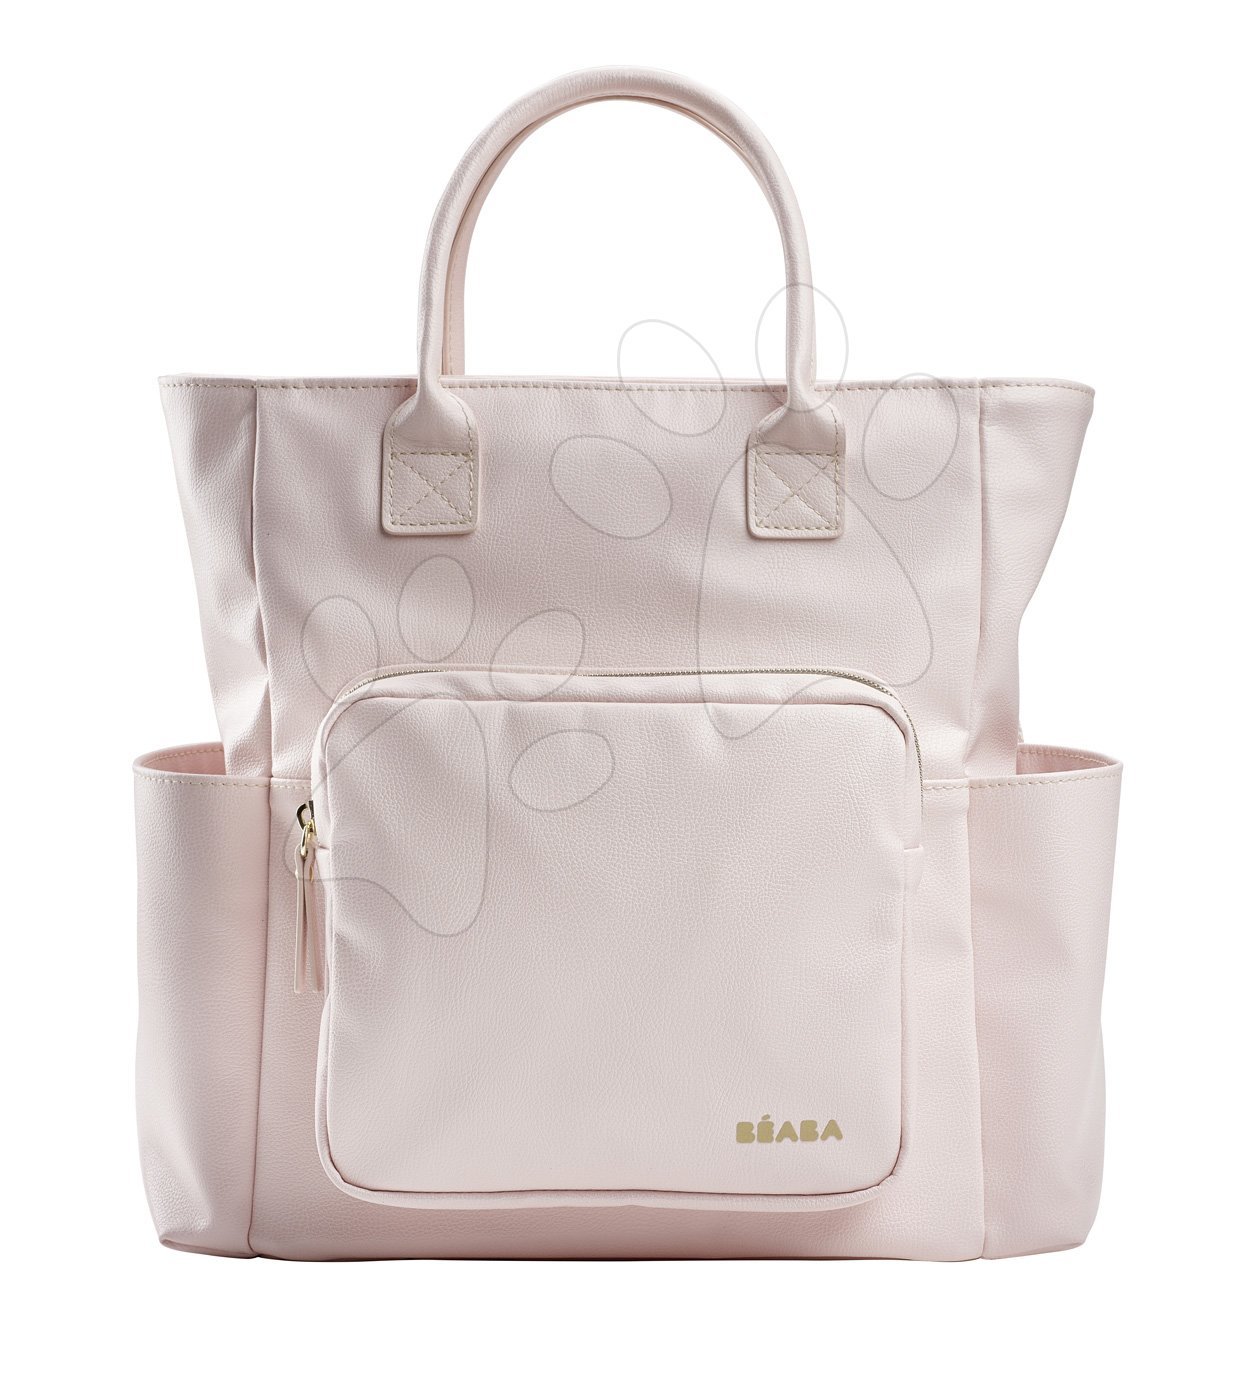 Prebaľovacie tašky ku kočíkom - Prebaľovacia taška ku kočíku Kyoto Beaba ružová